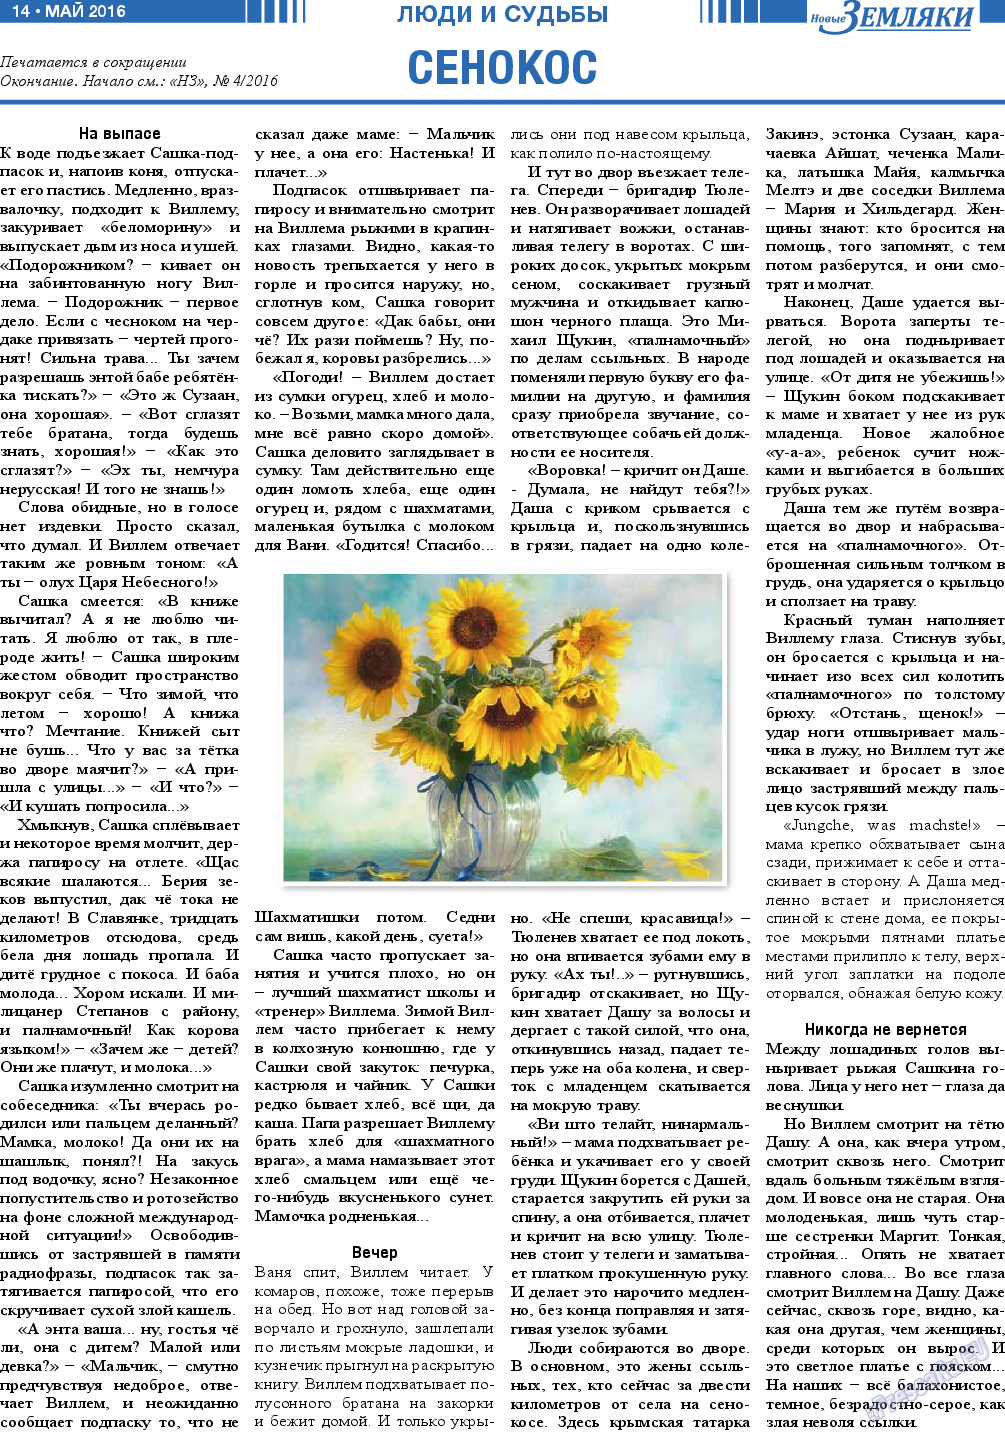 Новые Земляки (газета). 2016 год, номер 5, стр. 14